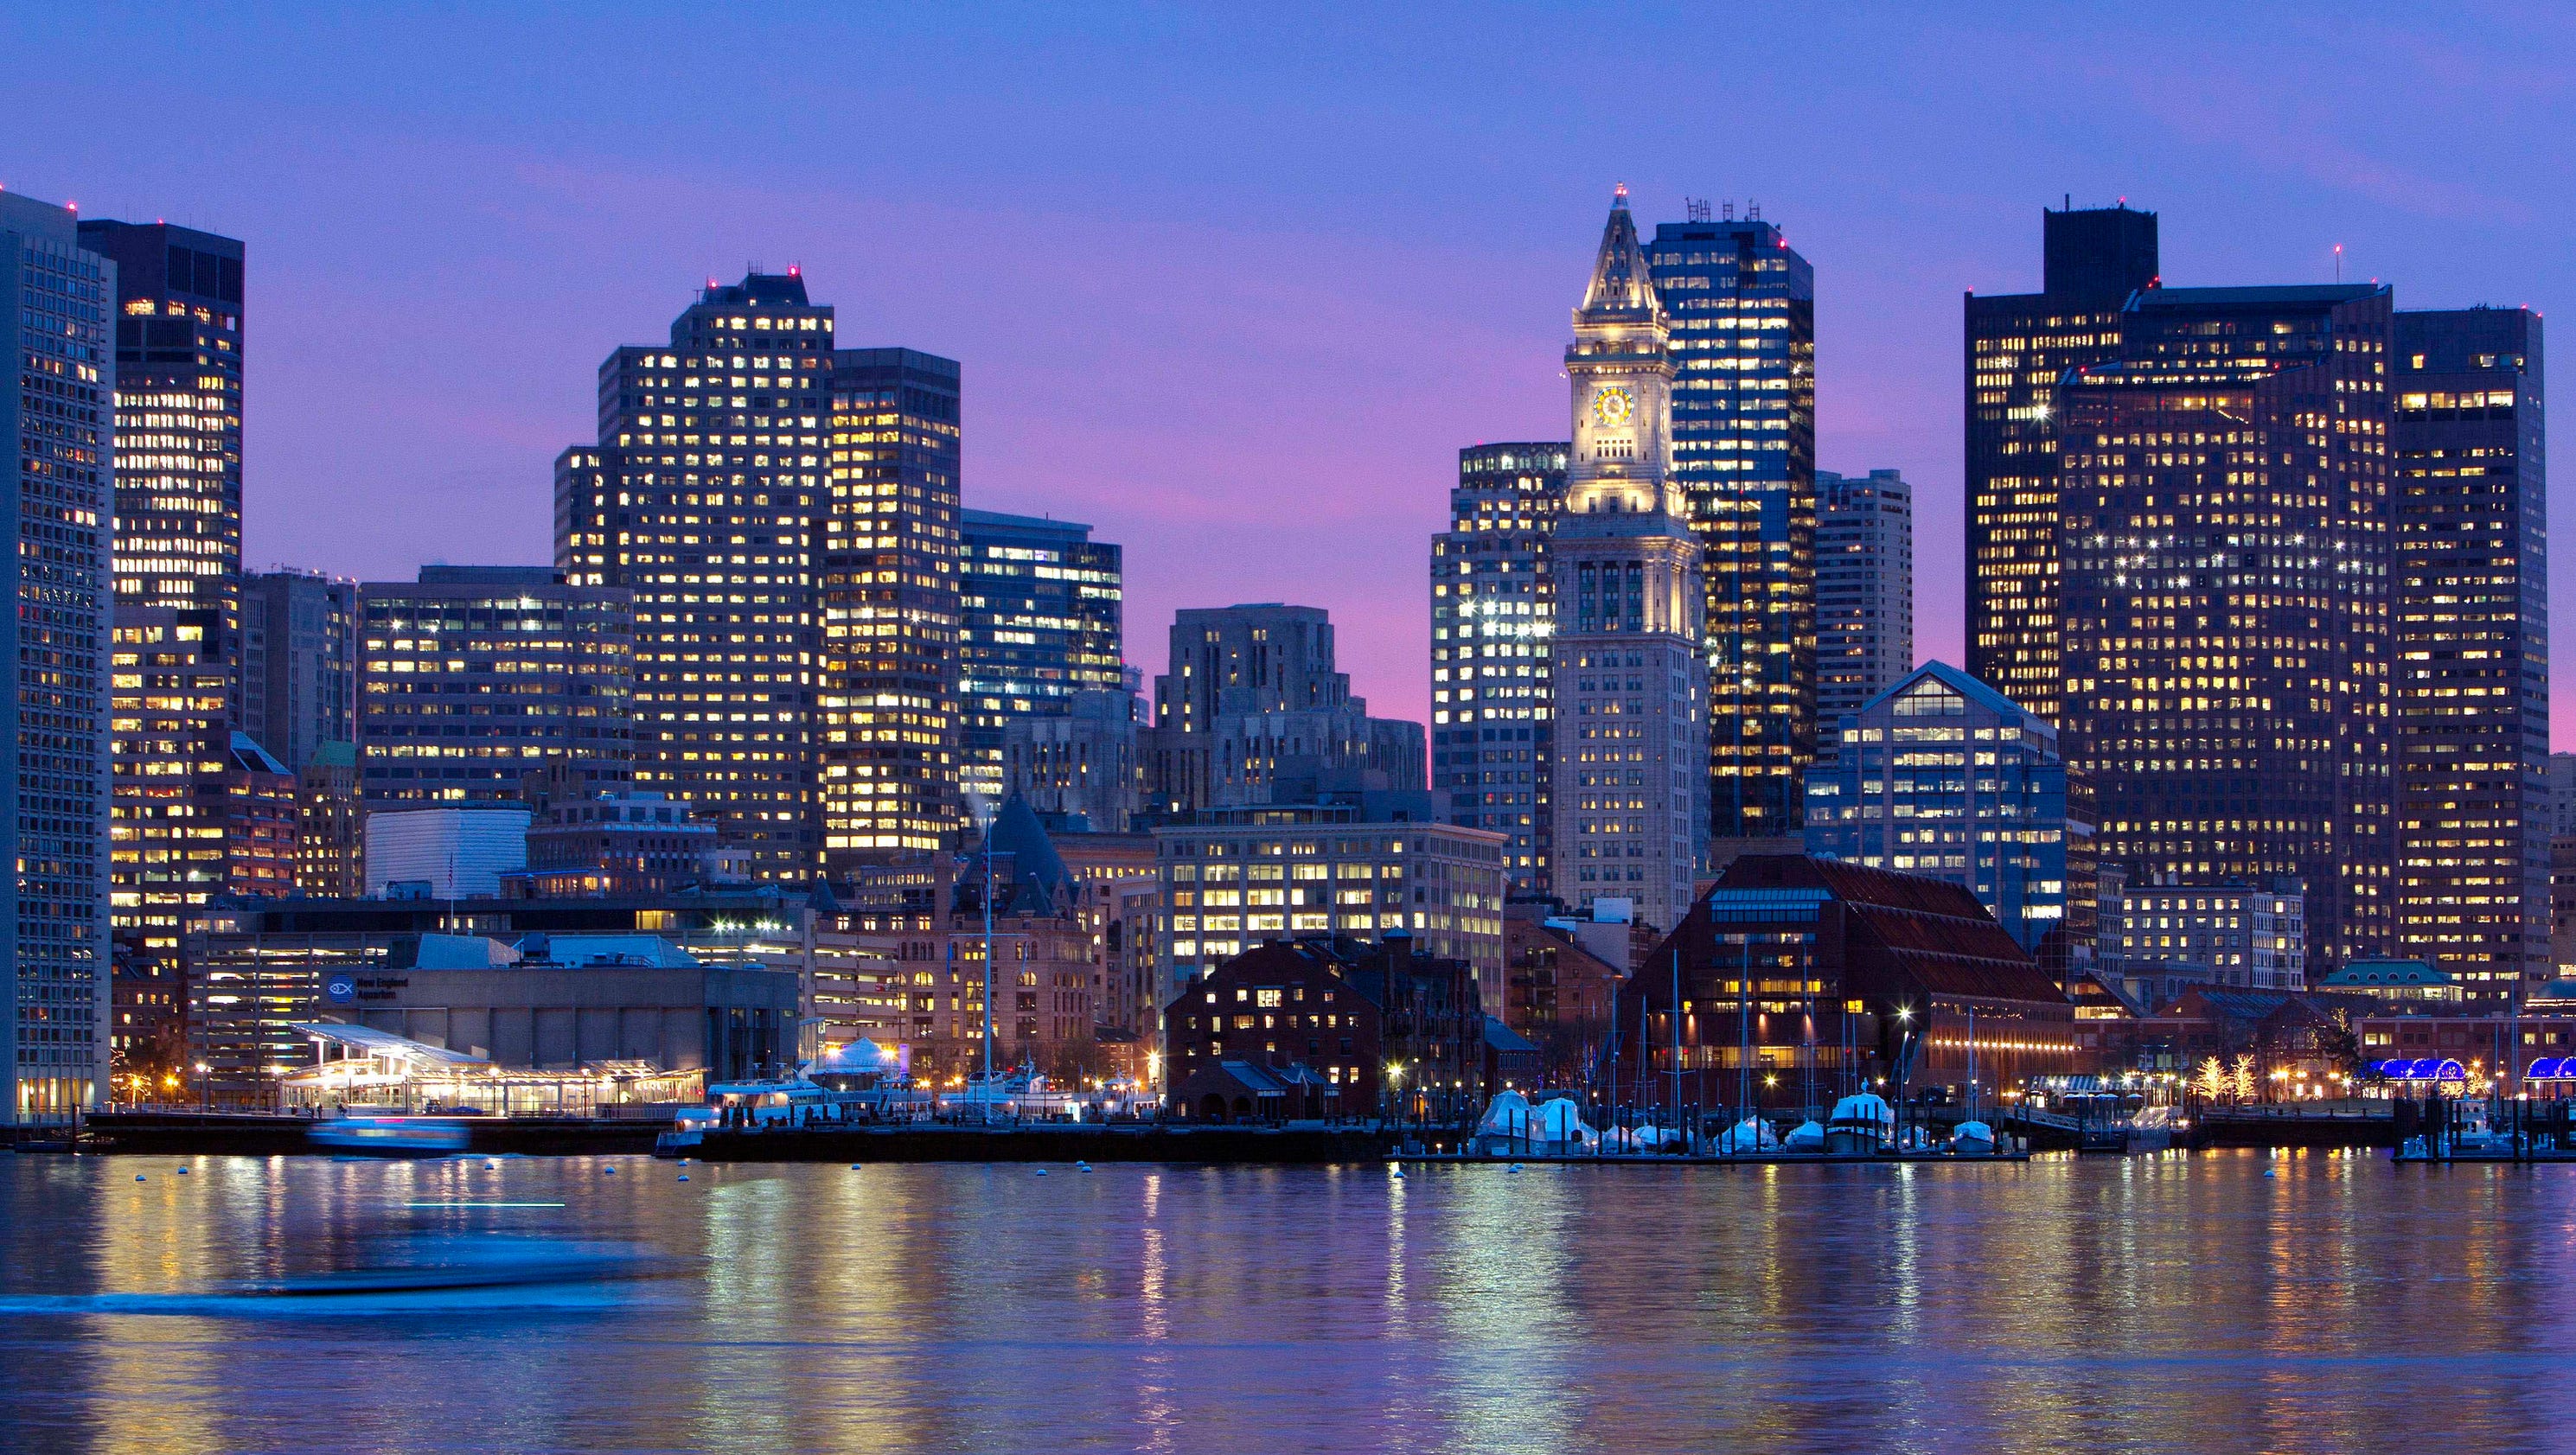 Boston will be USOC's bid city for 2024 Olympics